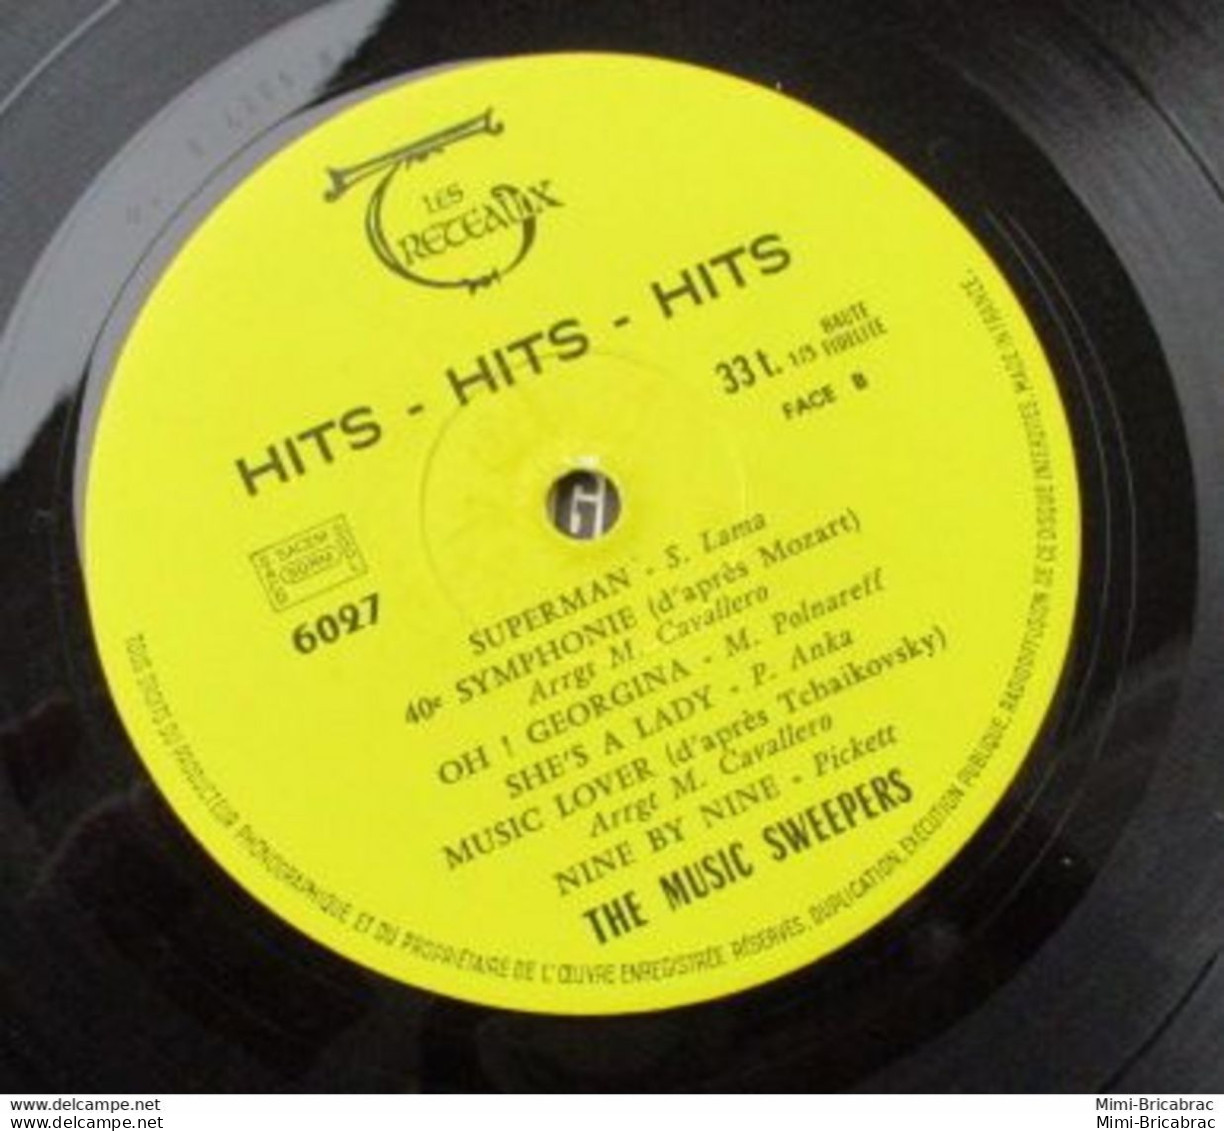 Suite Décés : Coté 7 Euros !! 33T HITS HITS HITS Vinyle LP 12" THE MUSIC SWEEPERS - SAD LIZA Pin'up TRETEAUX - Compilations